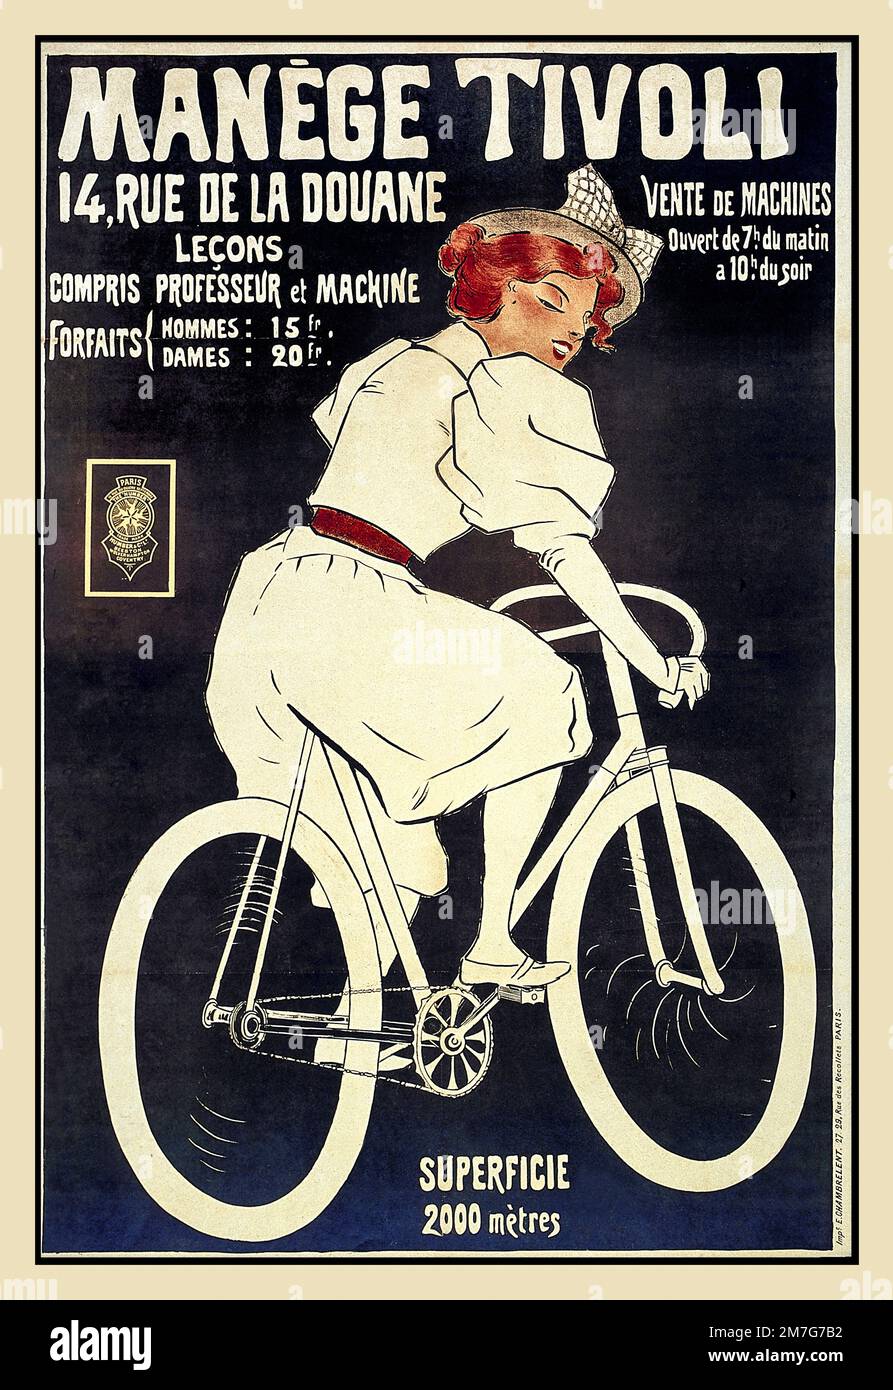 Vintage 1890s Bicycle Poster lithograph 'MANEGE TIVOLI' Paris France. Vente de Machines. Hommes Dames Forfaits Stock Photo